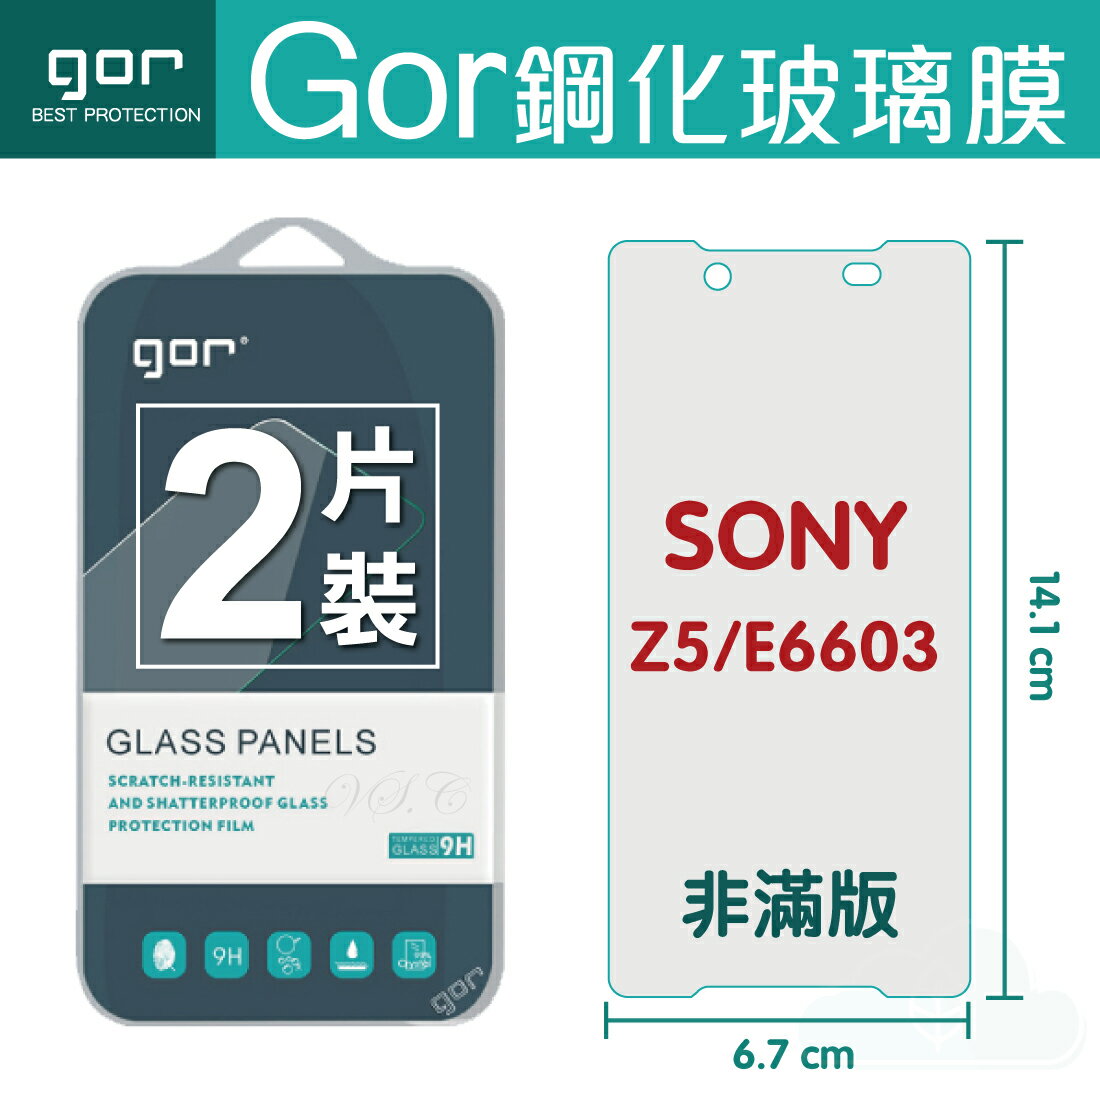 【SONY】GOR 9H Xperia Z5 (E6603) 鋼化 玻璃 保護貼 全透明非滿版 兩片裝【APP下單最高22%回饋】